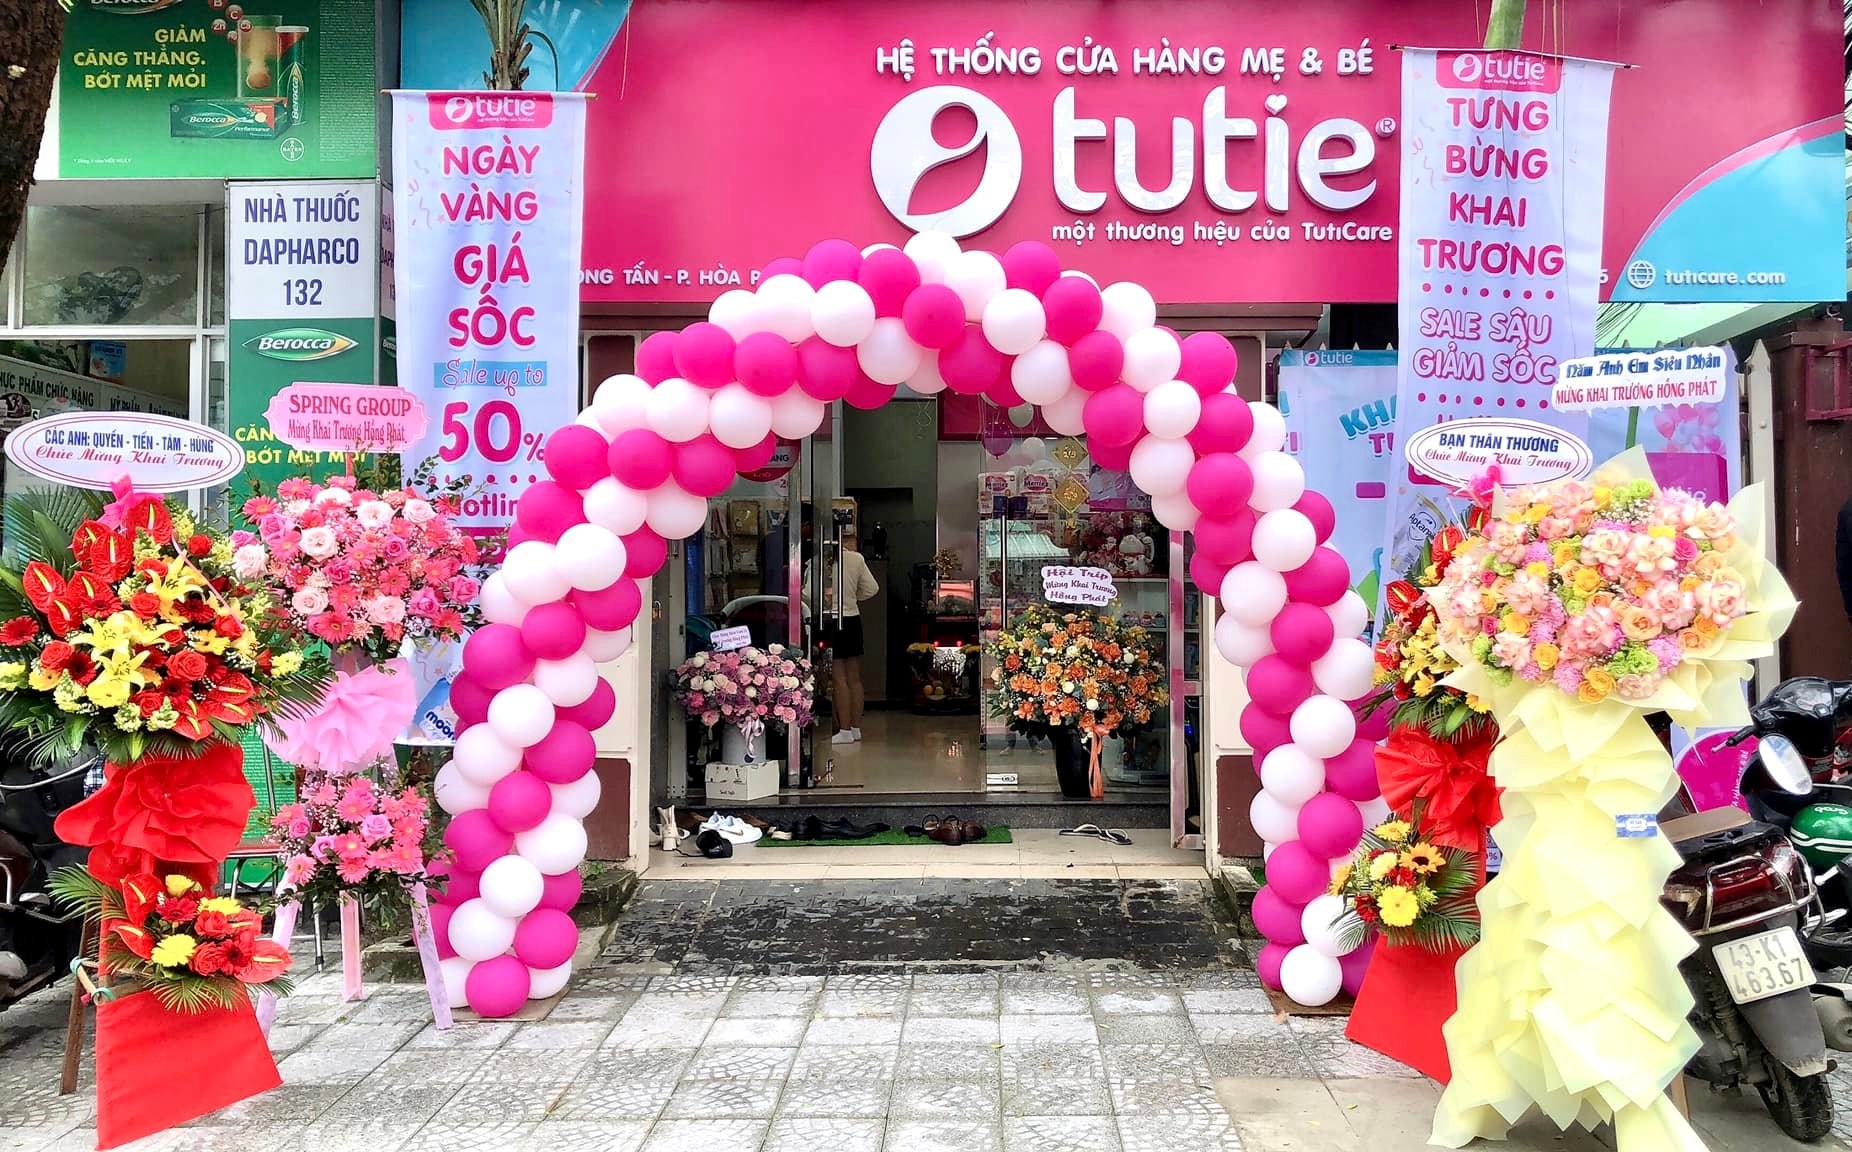 Mừng khai trương cửa hàng Tutie thứ 2 tại Đà Nẵng